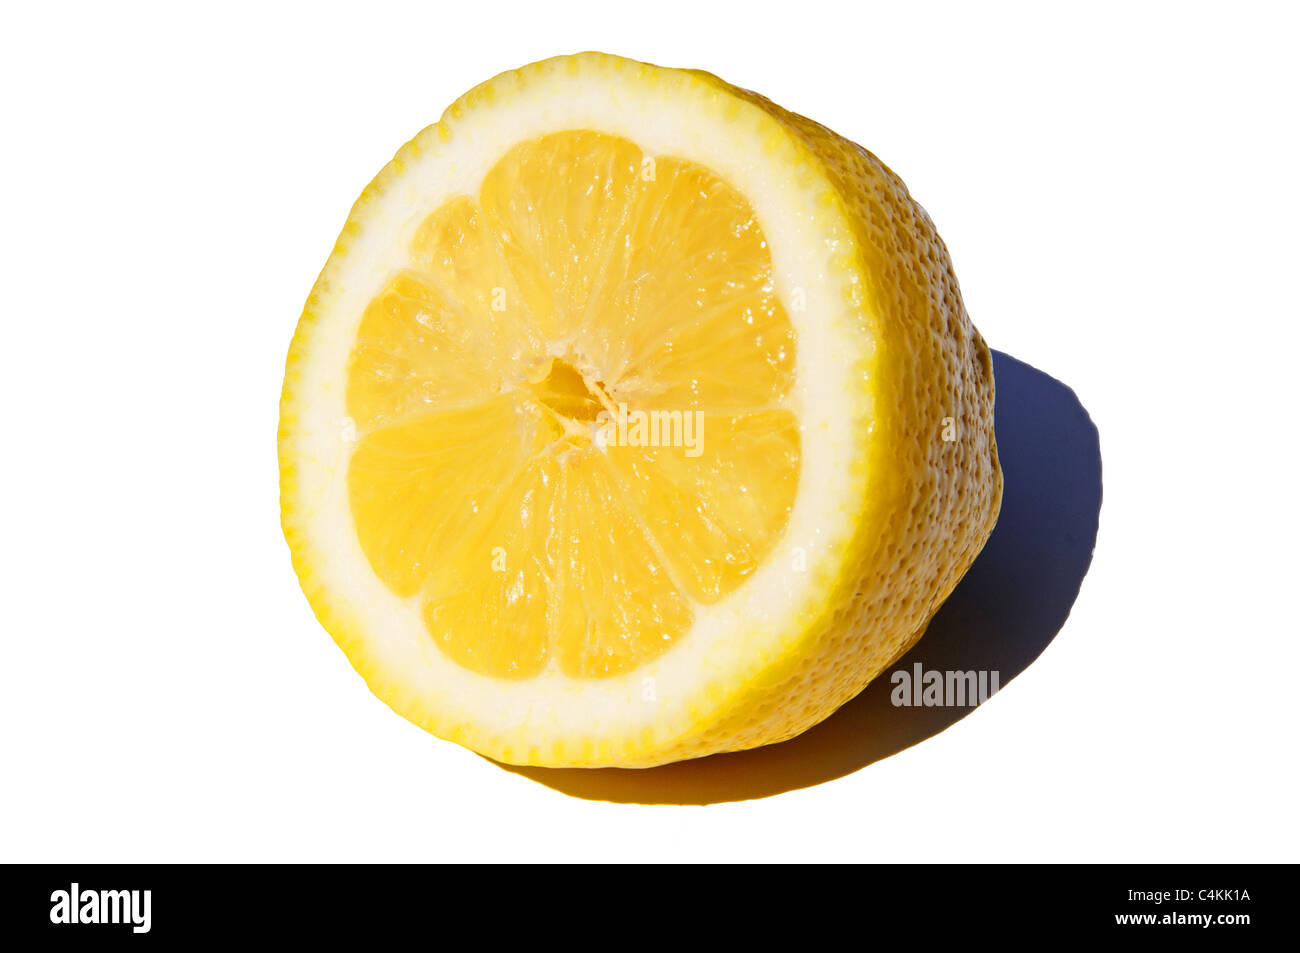 Halben Zitrone auf einem weißen Hintergrund, Urb. Calypso, Costa Del Sol, Malaga Provinz, Andalusien, Spanien, Westeuropa. Stockfoto